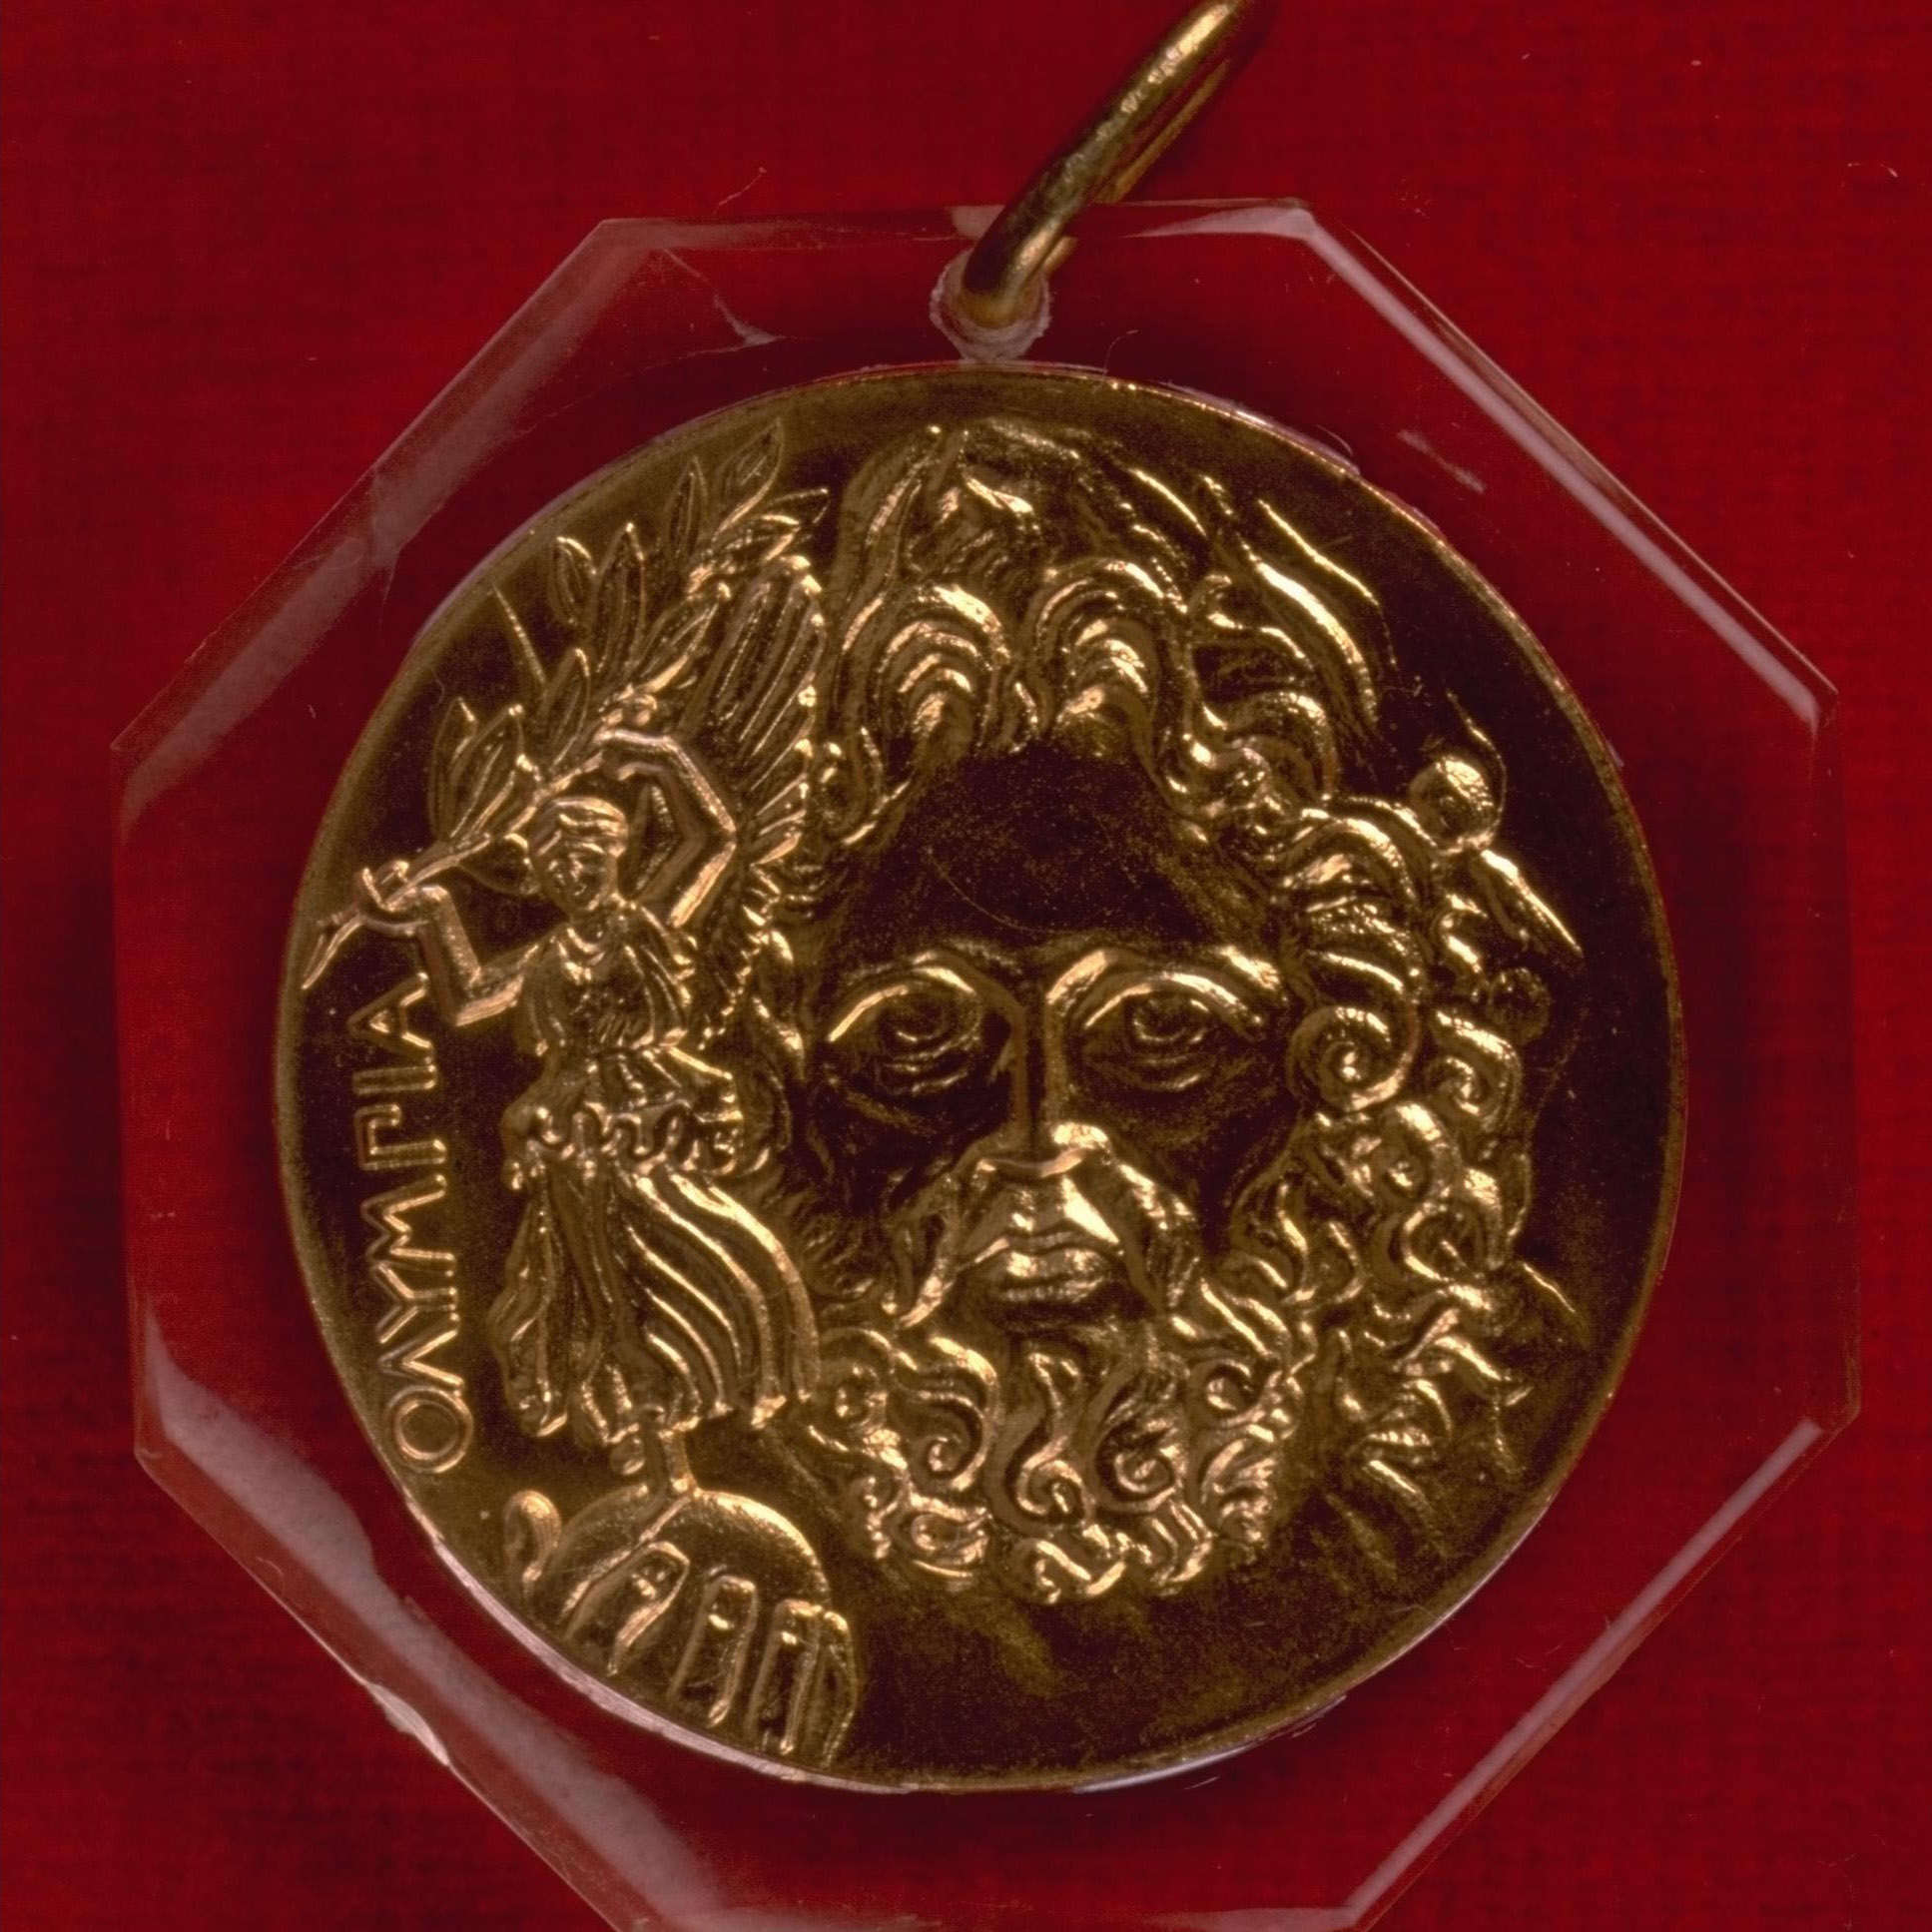 Первое олимпийское золото. Первые Олимпийская медаль Афины 1896. Медаль Олимпийские игры Афины 1896. Медаль Олимпийских игр 1896 года. Олимпийские игры 1896 года в Афинах медали.